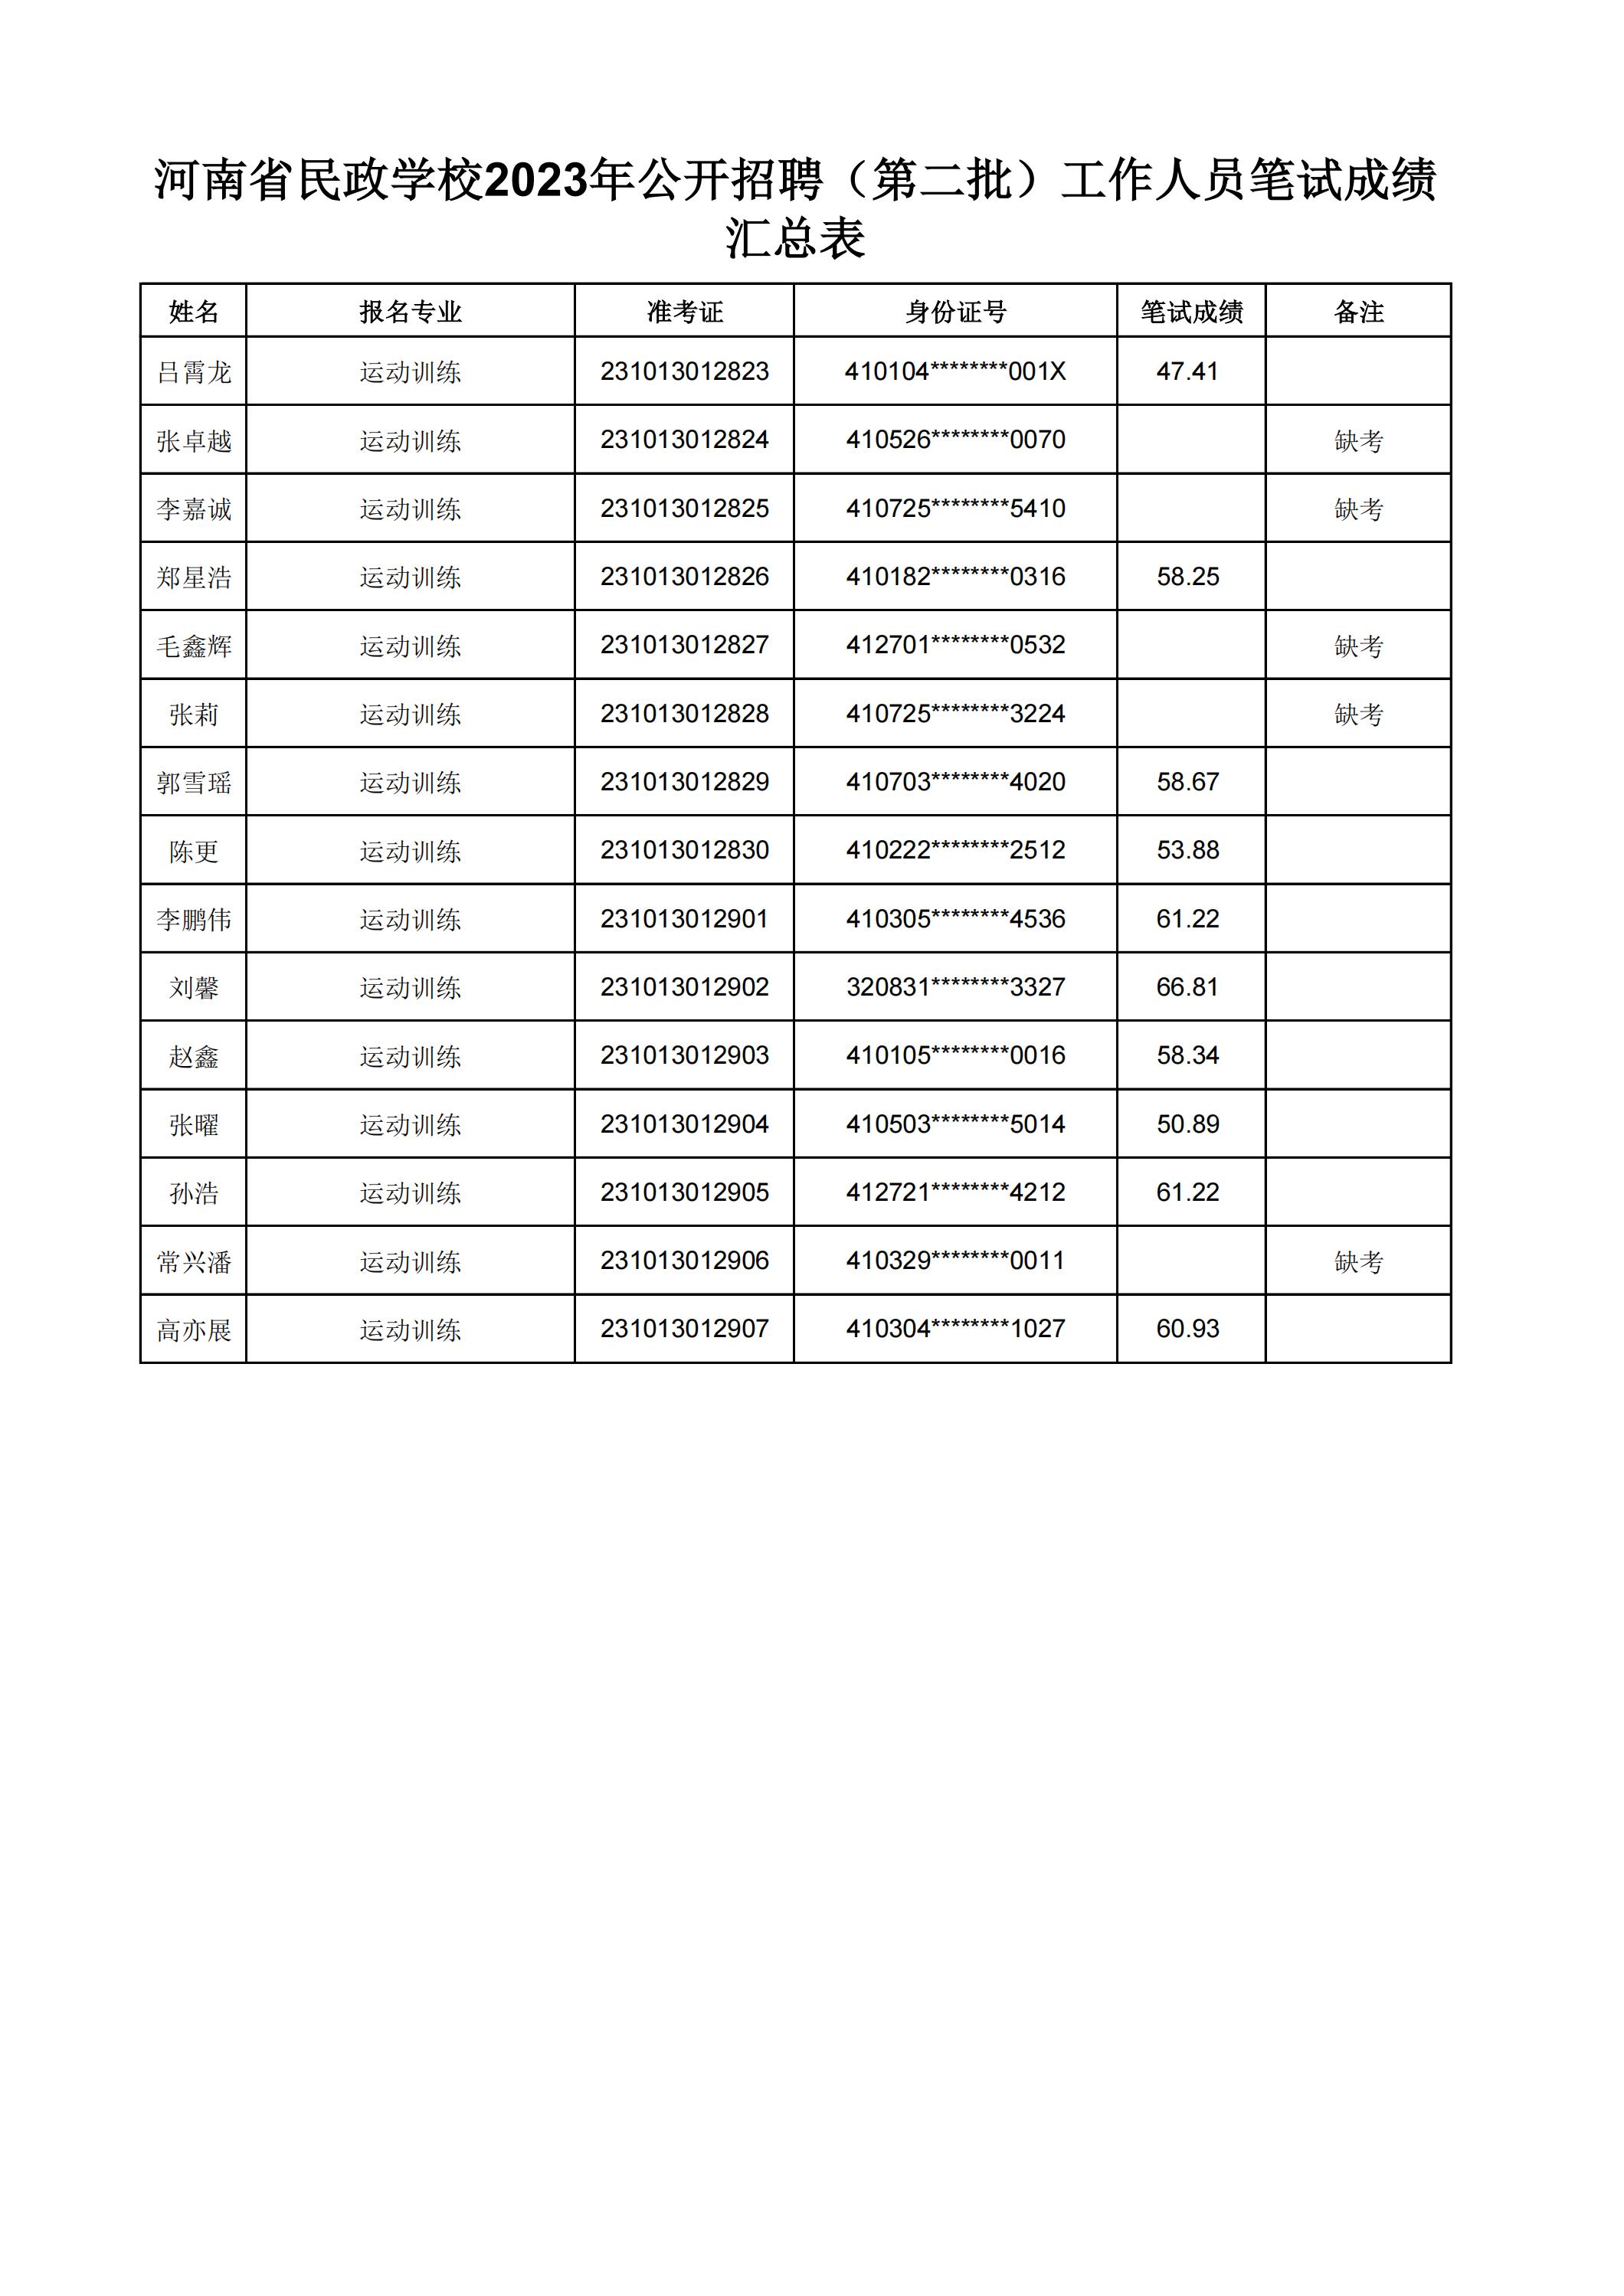 河南省民政学校2023年公开招聘（第二批）工作人员笔试成绩汇总表(2)_32.jpg